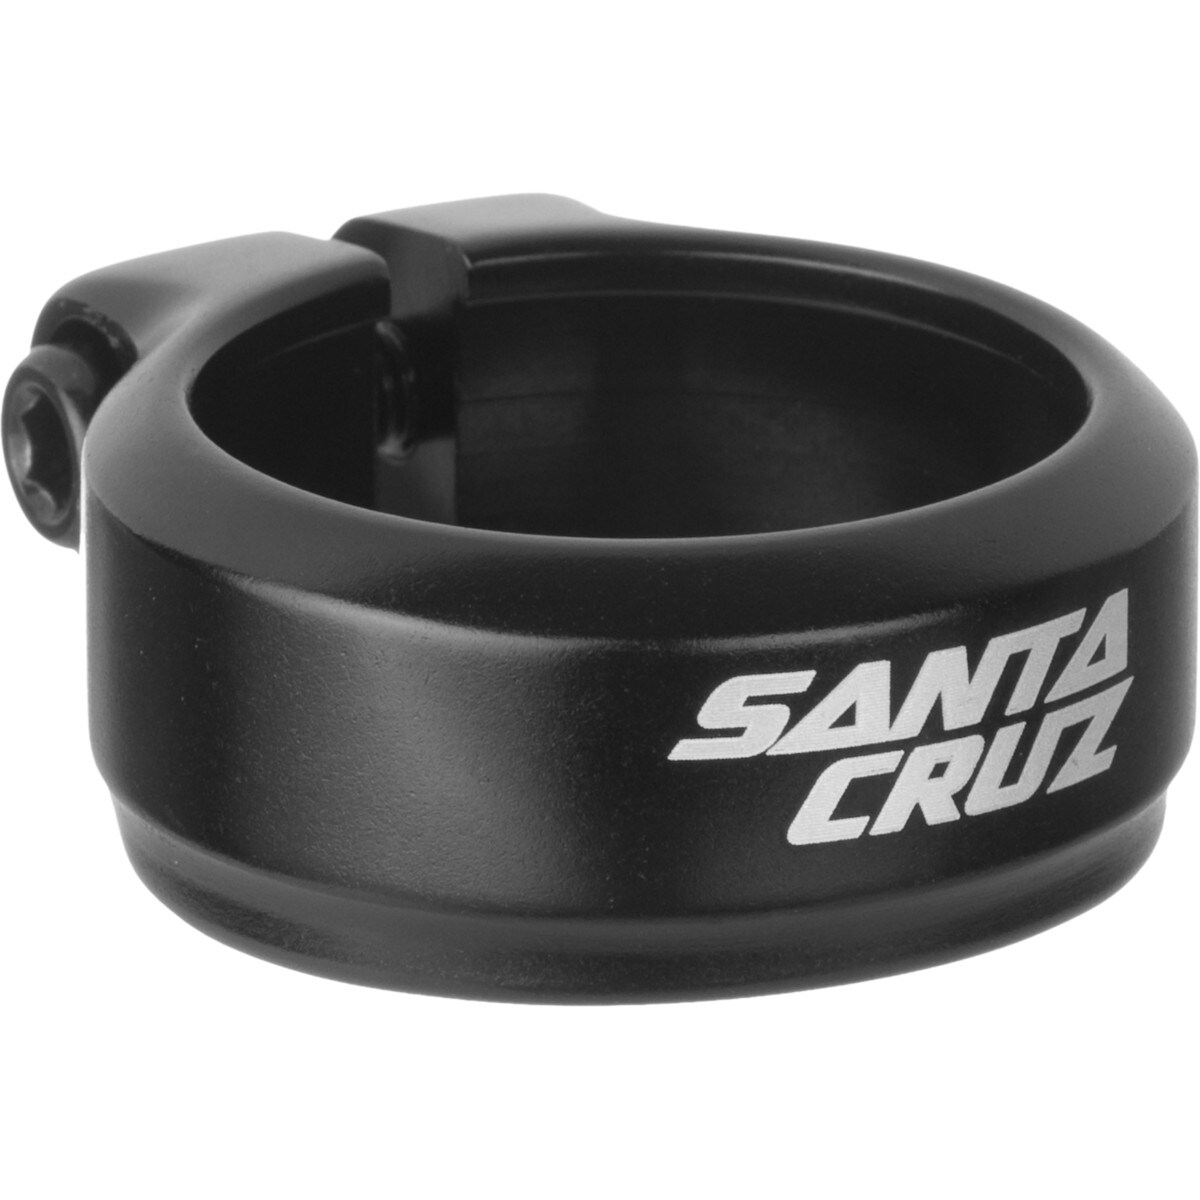 Santa Cruz Bicycles Logo Fixed Seatpost Clamp